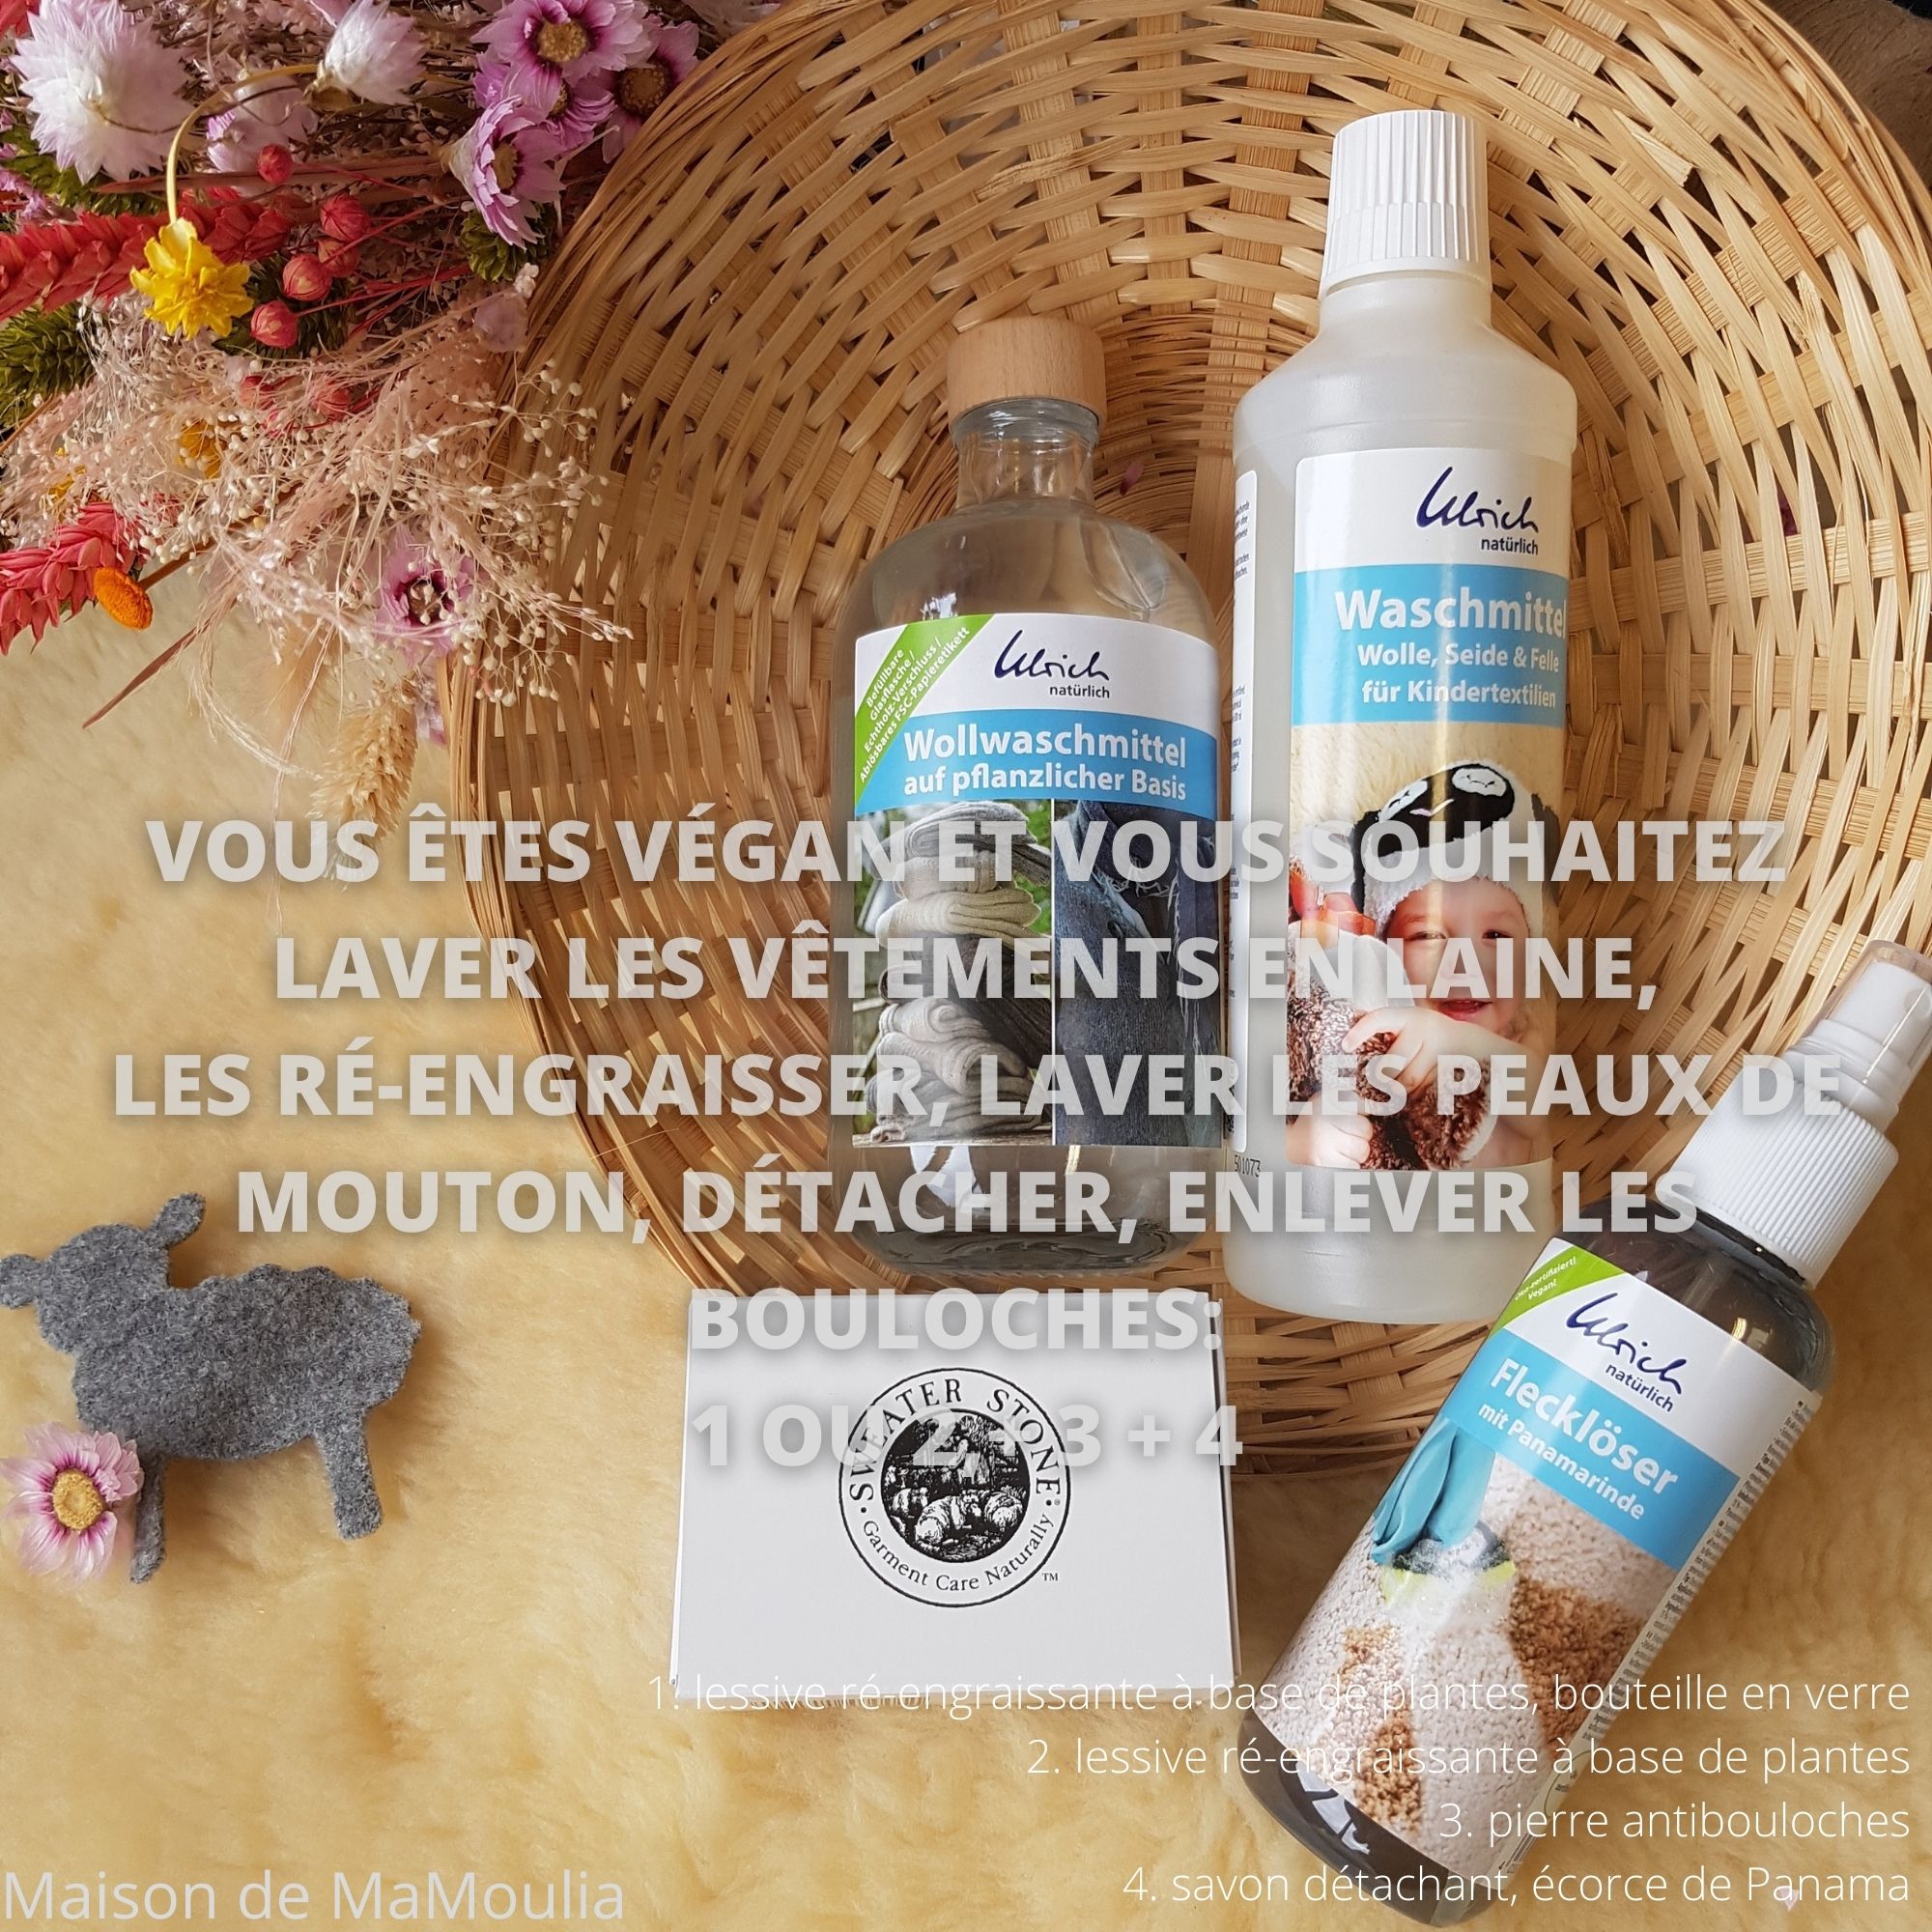 Lessive-laine-peau-soie-ulrich-naturlich-maison-de-mamoulia-spray-detachant-ecorce-panama-peau-de-mouton-pierre-antibouloches